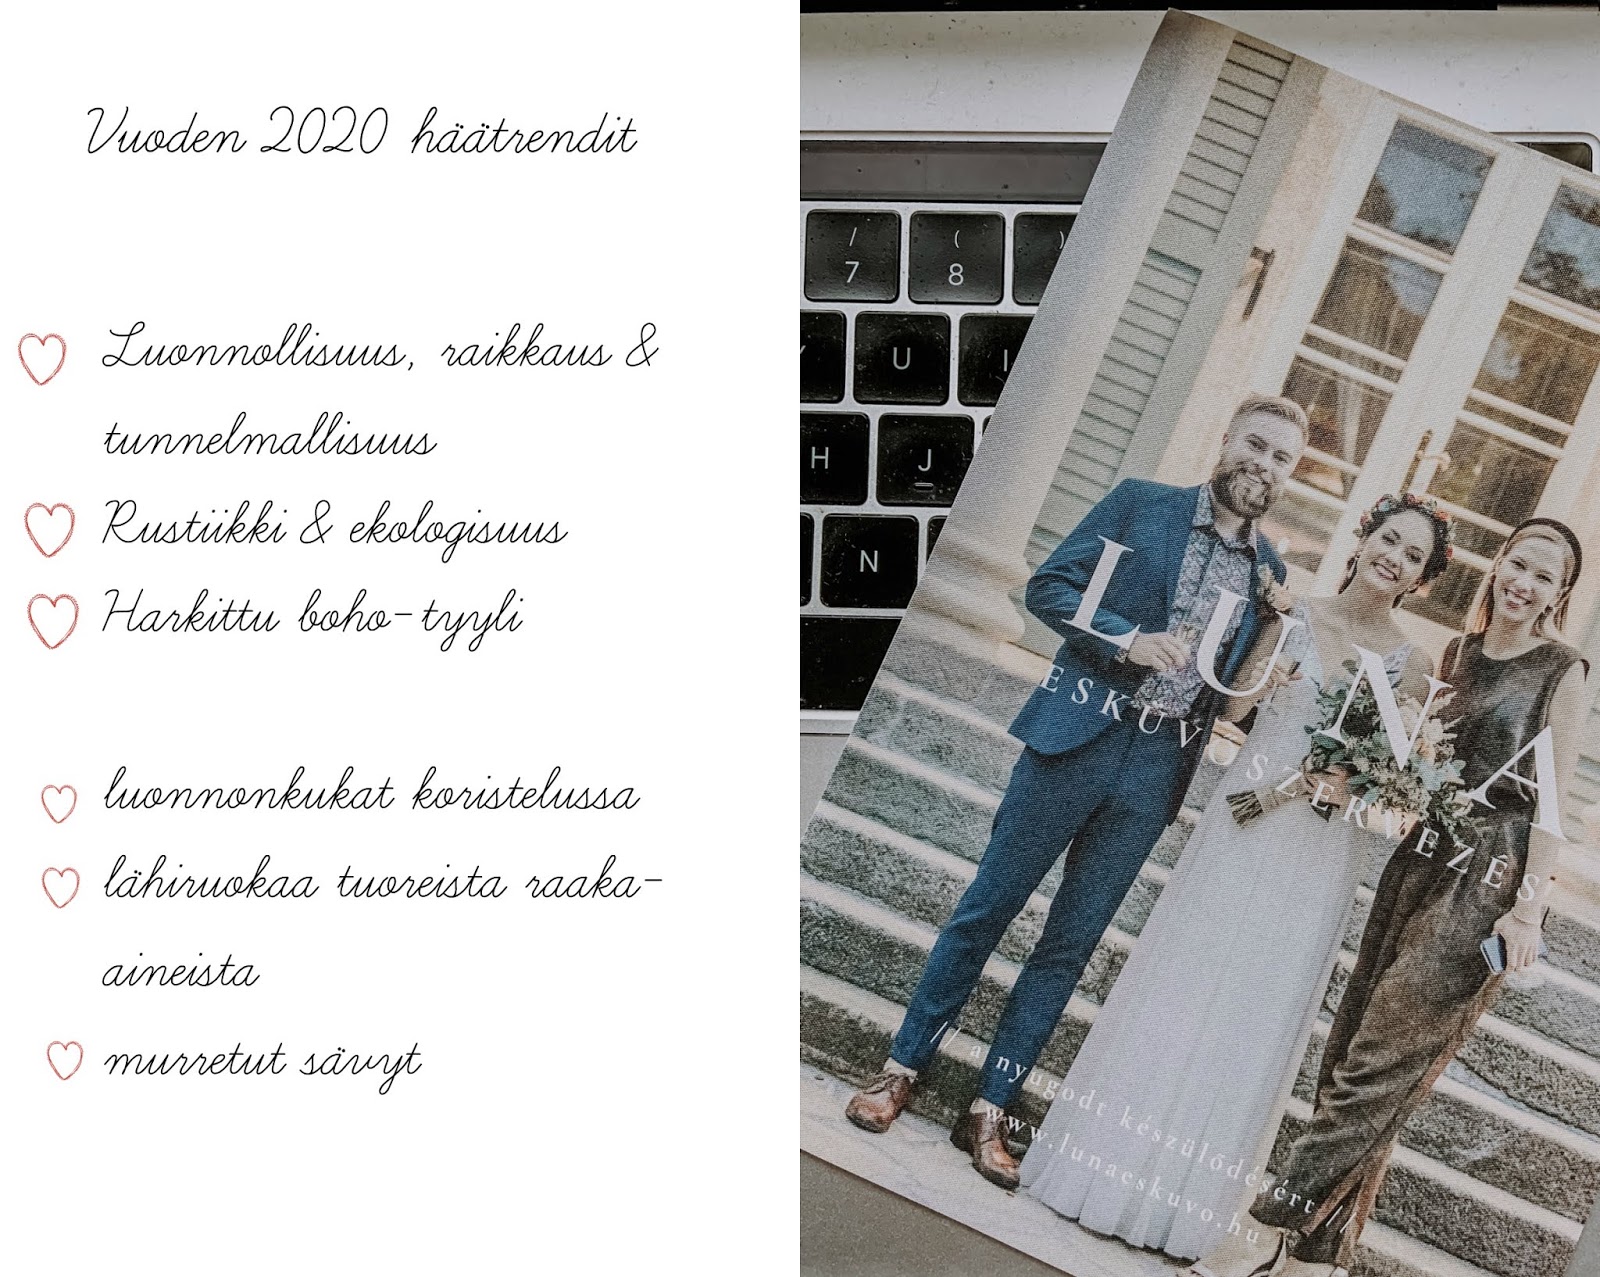 Wedding trends 2020